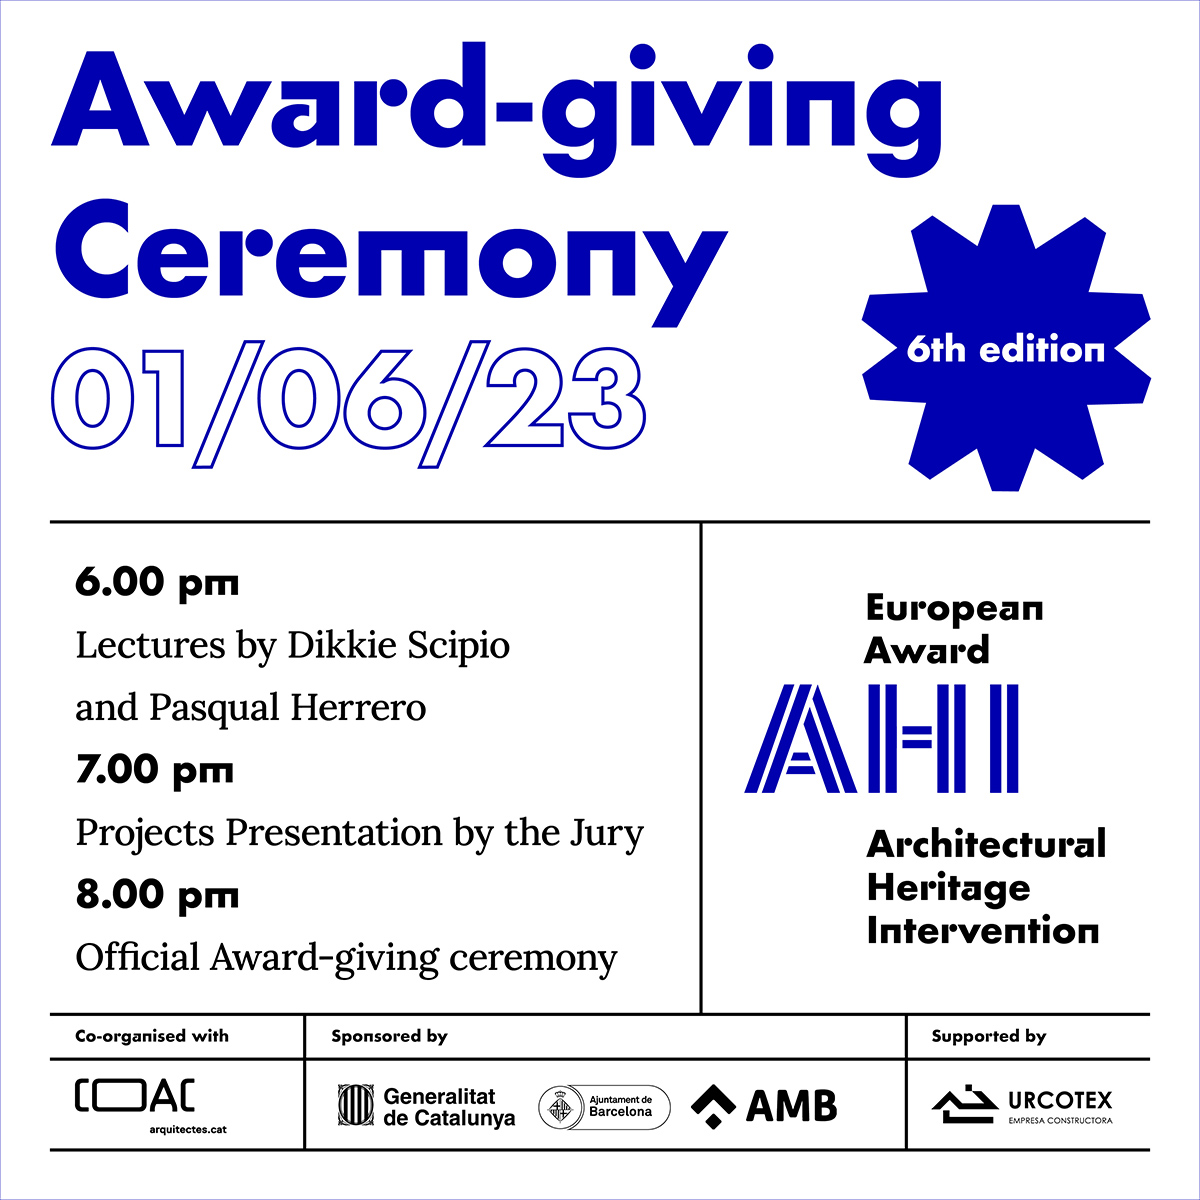 La 6e édition du Prix européen AHI s’achève avec la cérémonie de remise des Prix des différentes catégories